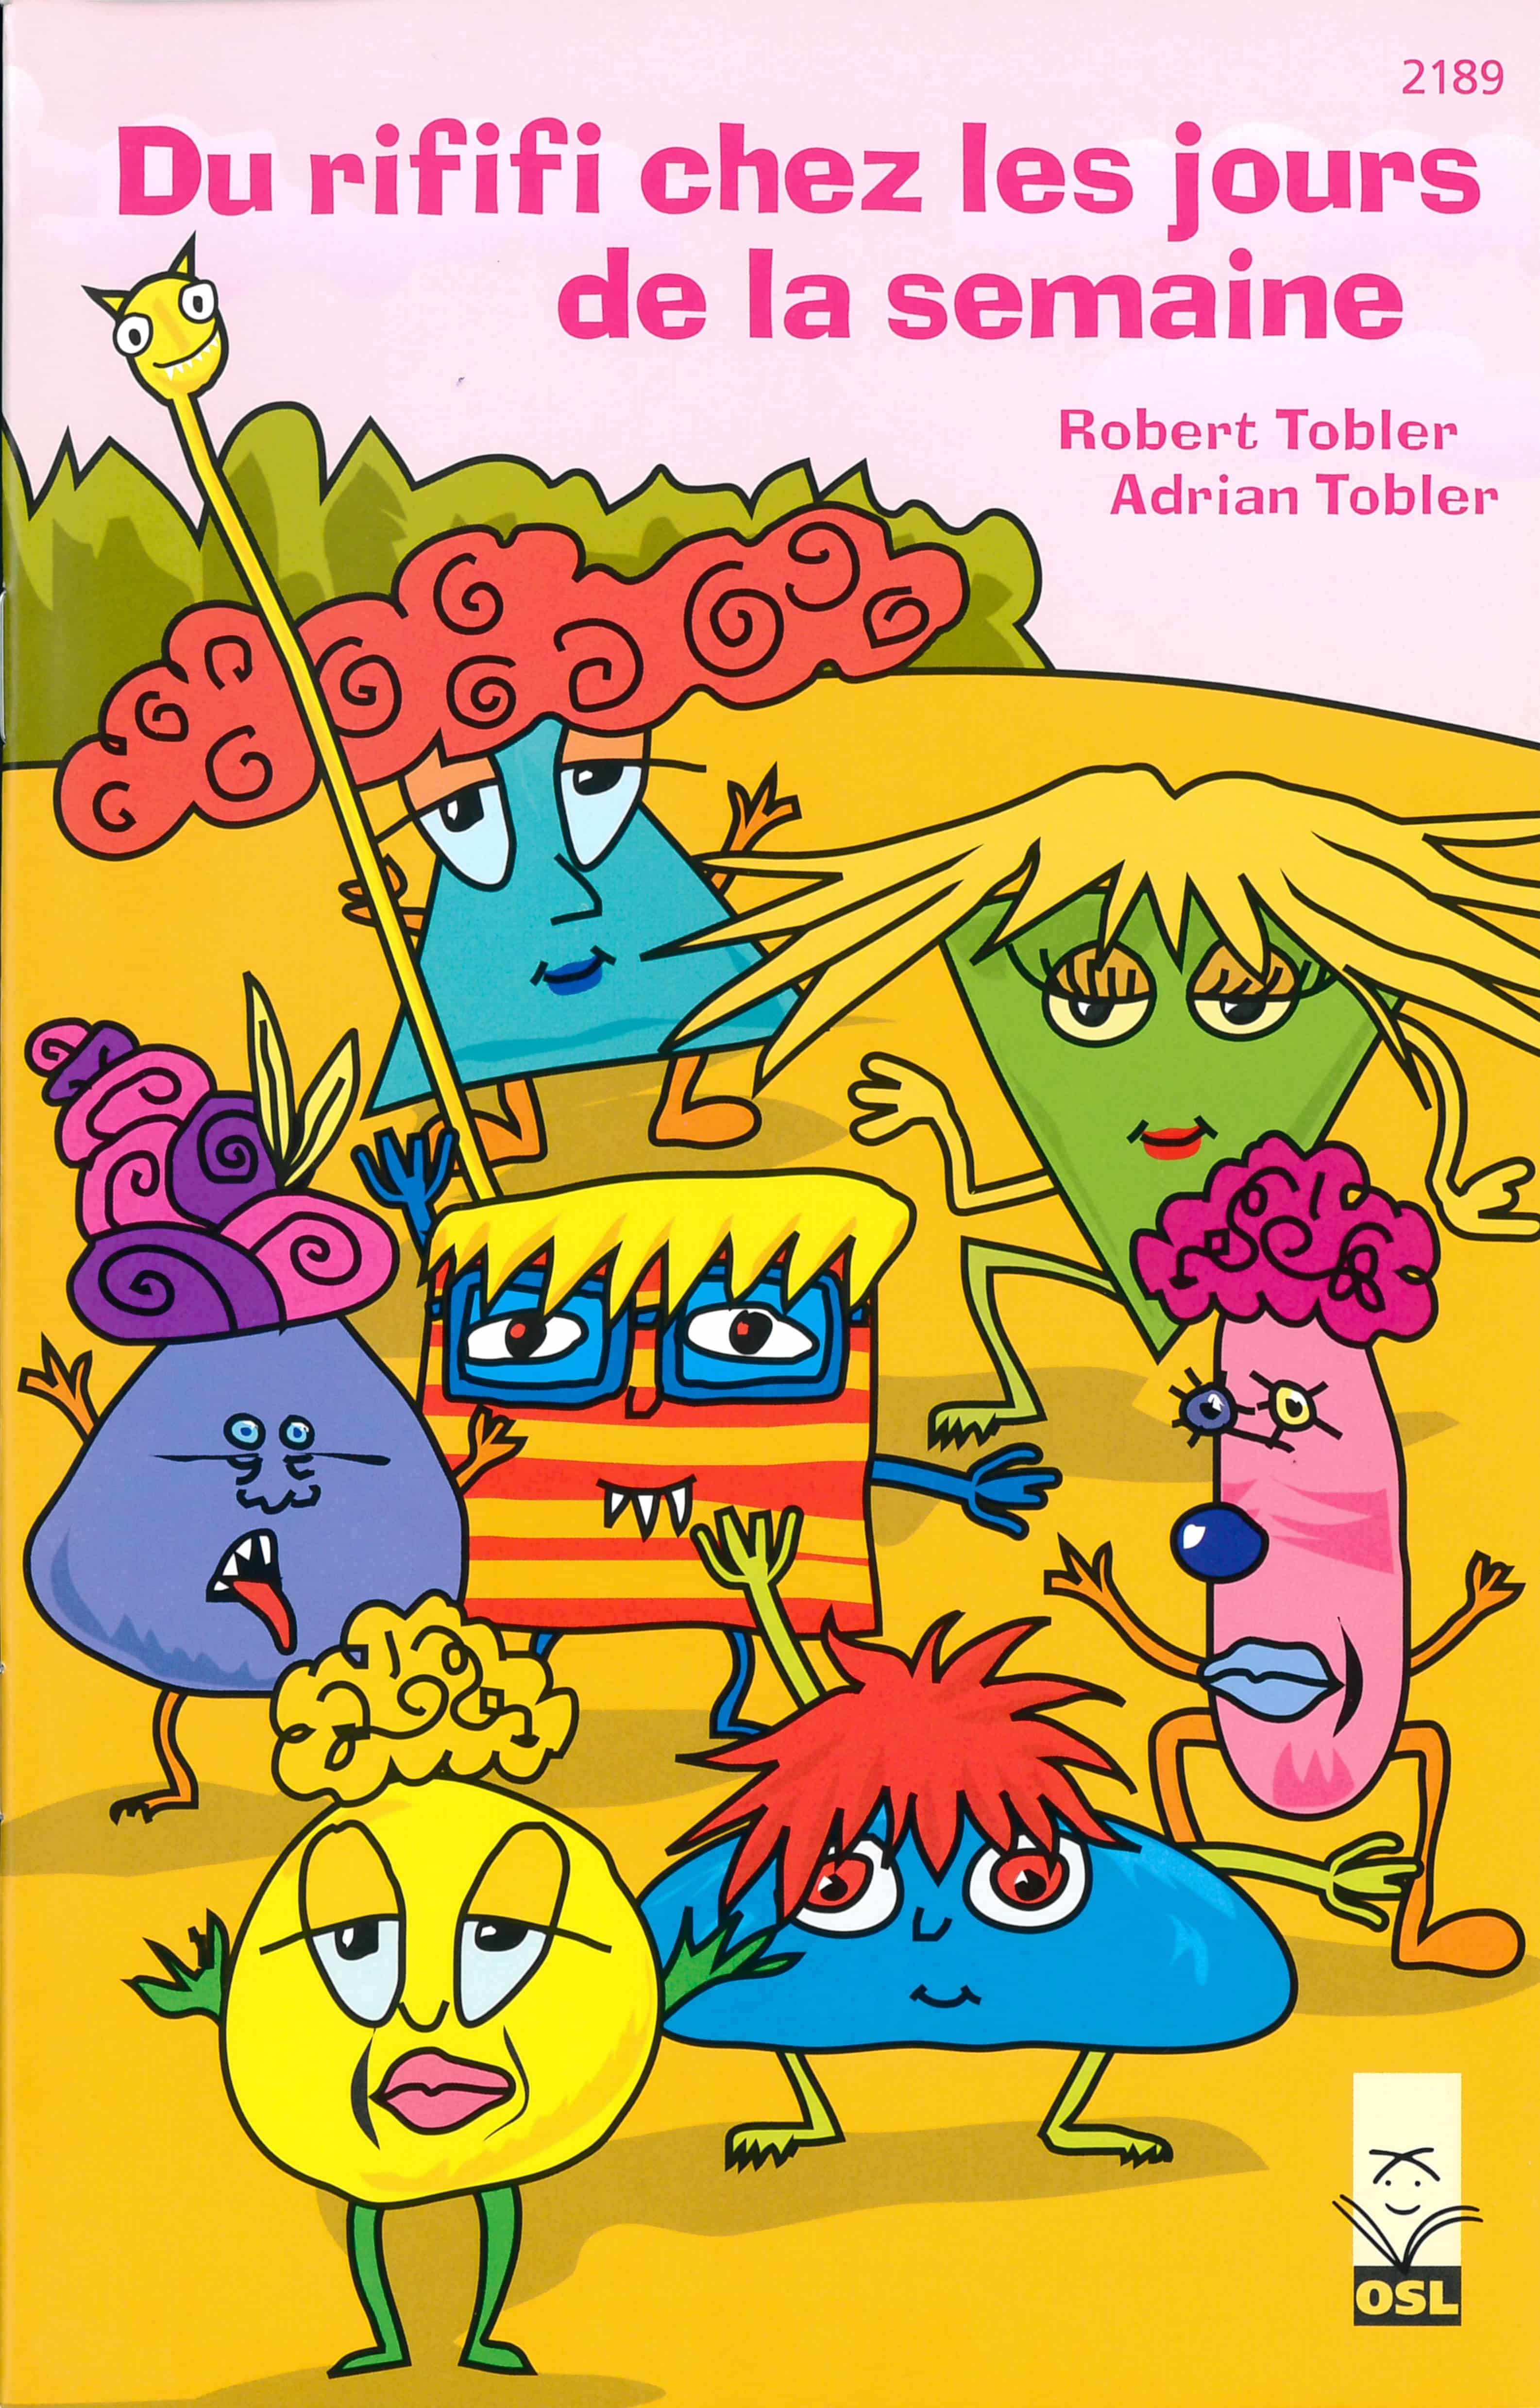 Du rififi chez les jours de la semaine, livre pour enfants de Robert Tobler, éditions OSL, fantastique, jeux de langage